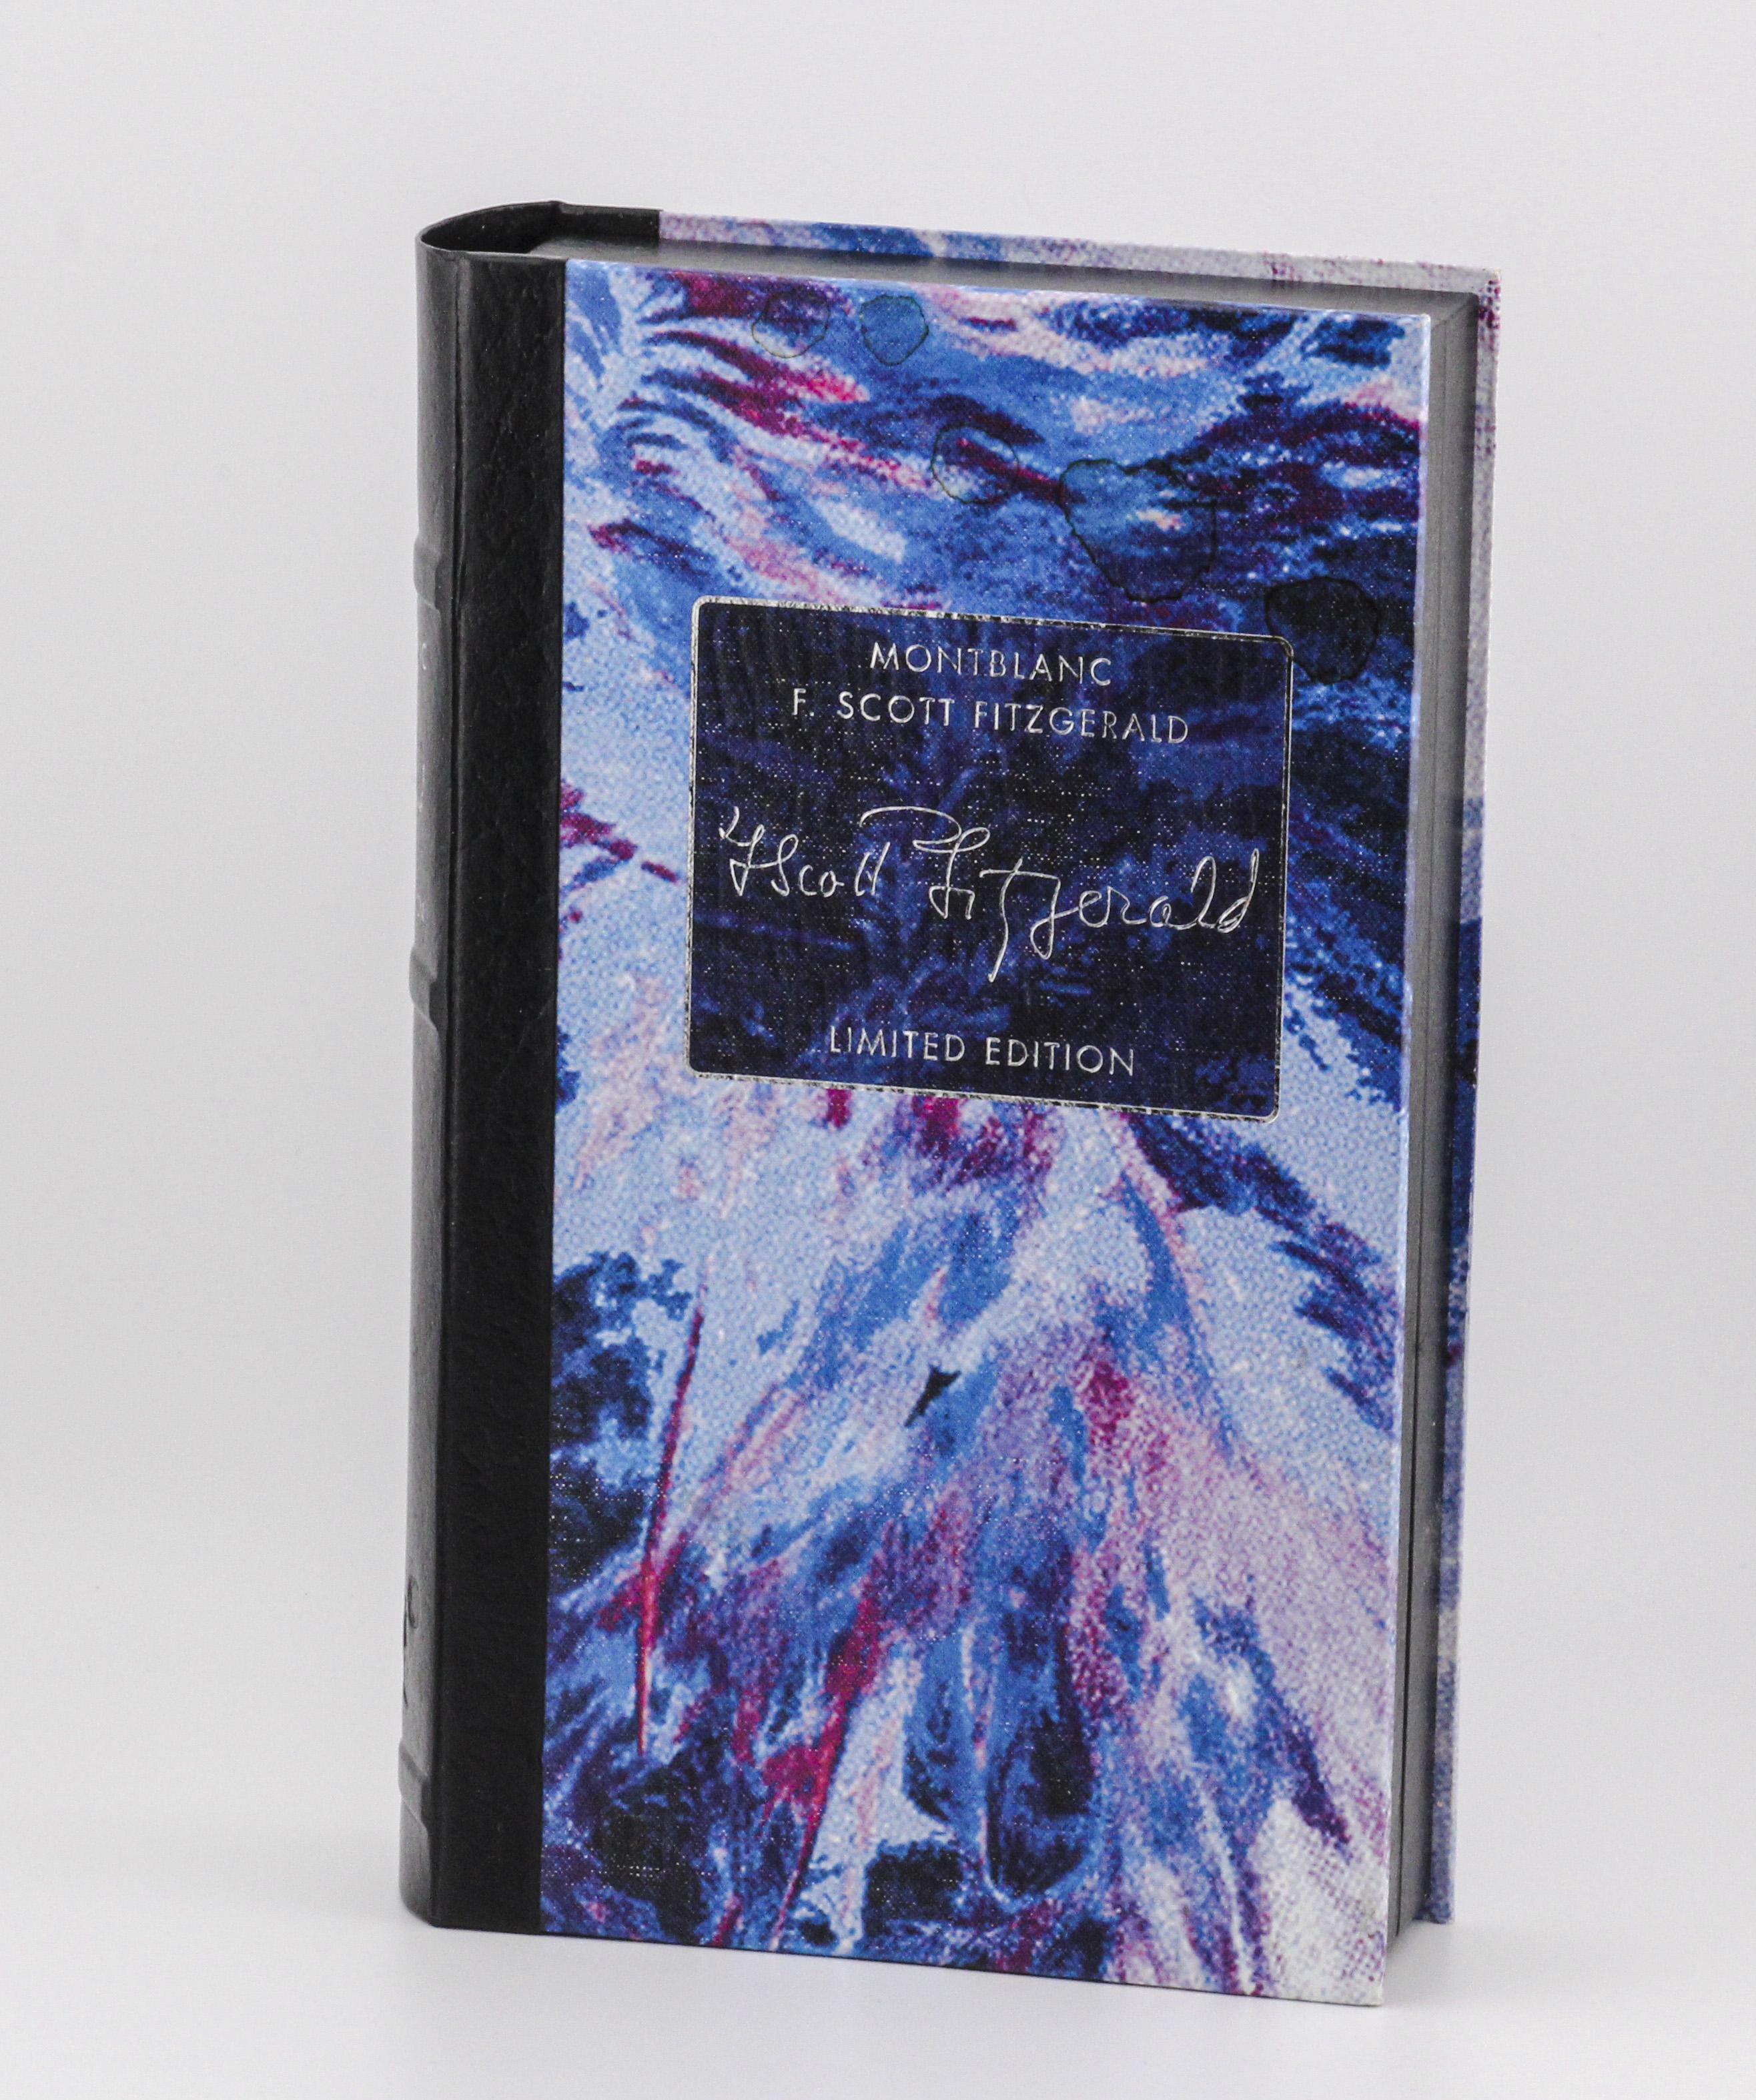 Le stylo à bille Montblanc Writers Limited Edition est un hommage raffiné à l'un des romanciers américains les plus célèbres du XXe siècle. Fabriqué avec une attention méticuleuse aux détails, ce stylo à bille exquis capture l'essence du glamour de